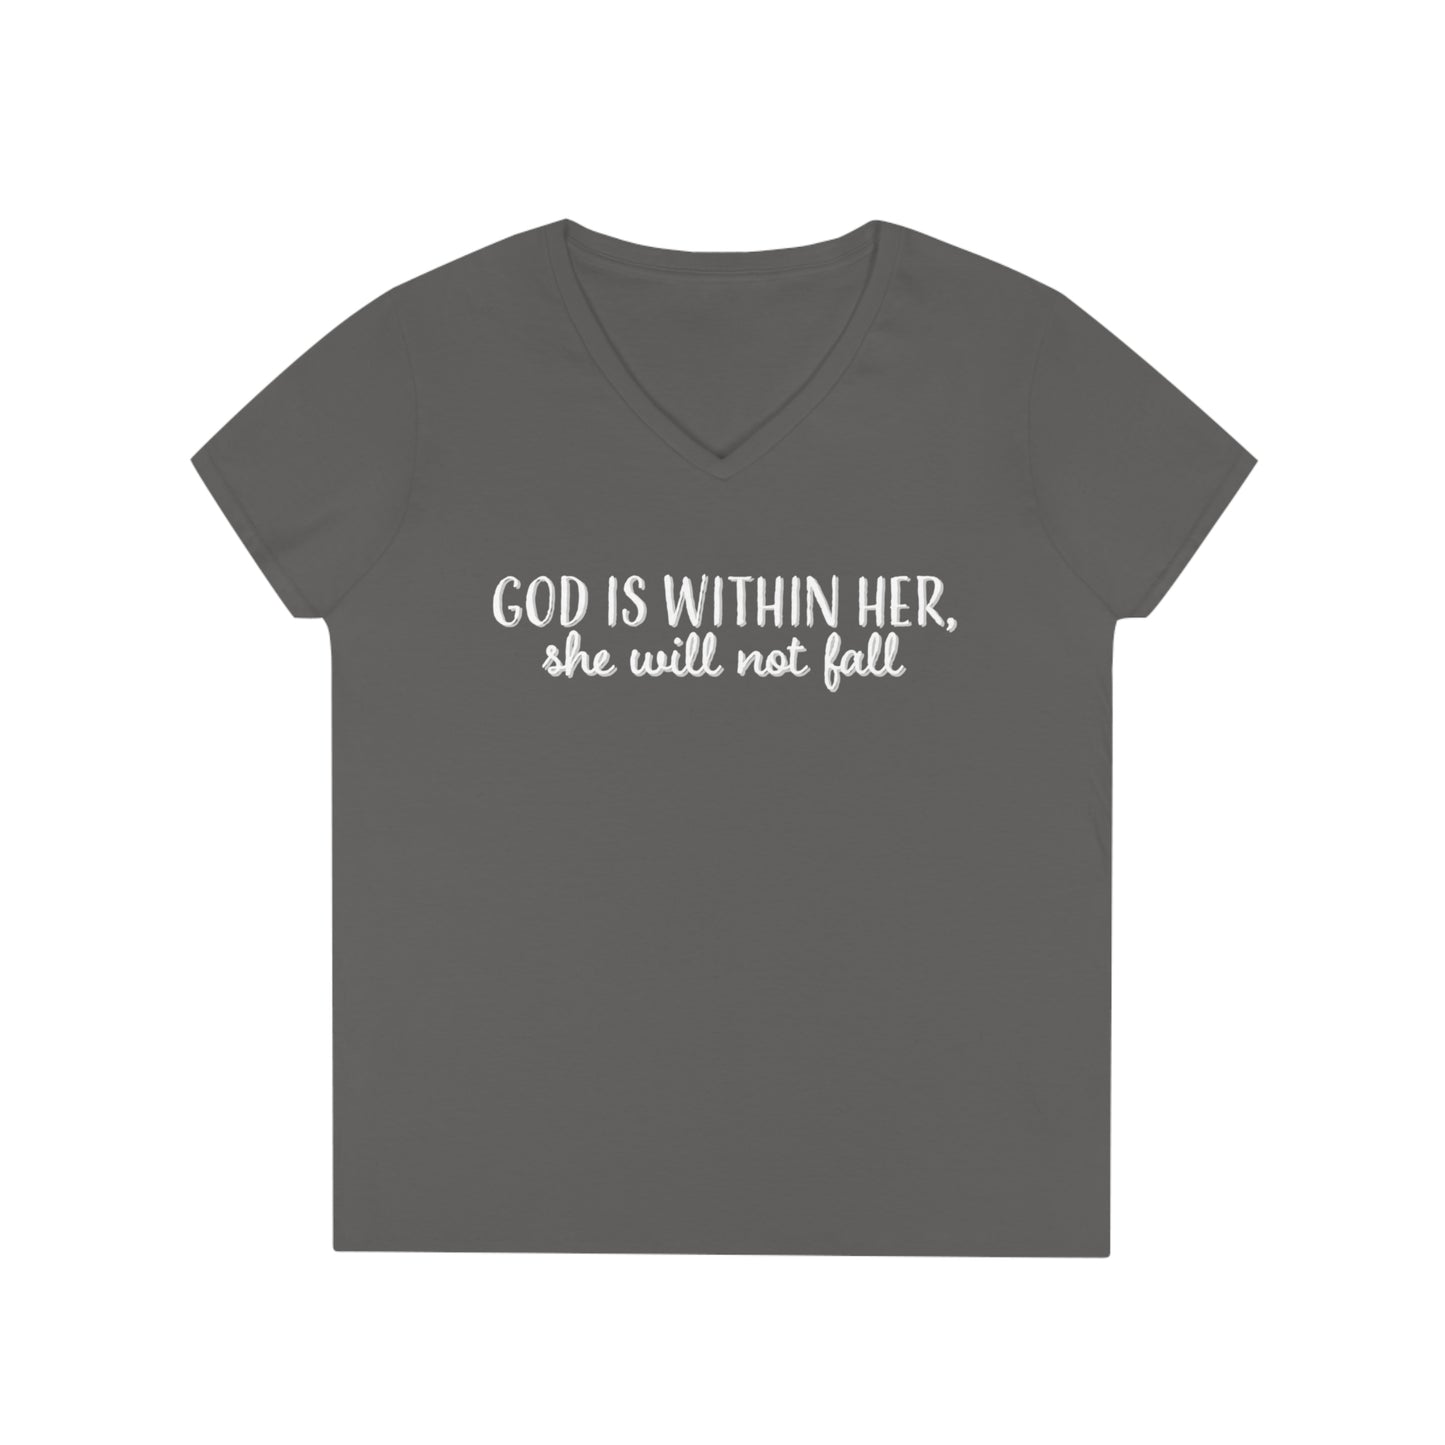 Ladies' V-Neck T-Shirt, Bible Verse Shirt, Trendy Christian Shirt